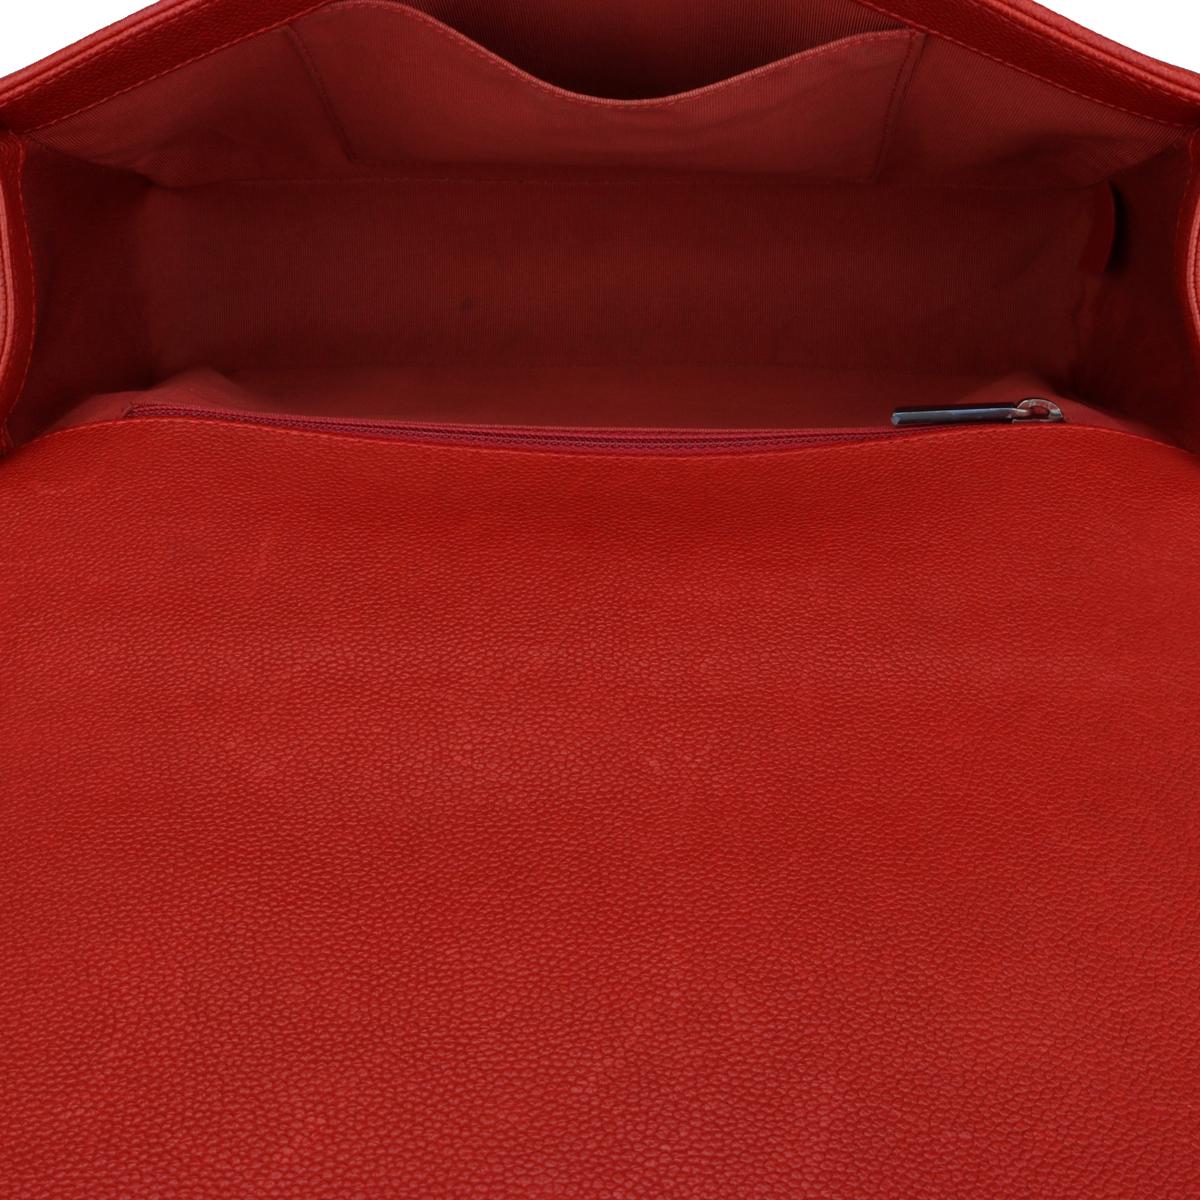 CHANEL Neue Medium gesteppte Boy Bag in Rot Kaviar mit Rutheniumbeschlägen 2016 im Angebot 11